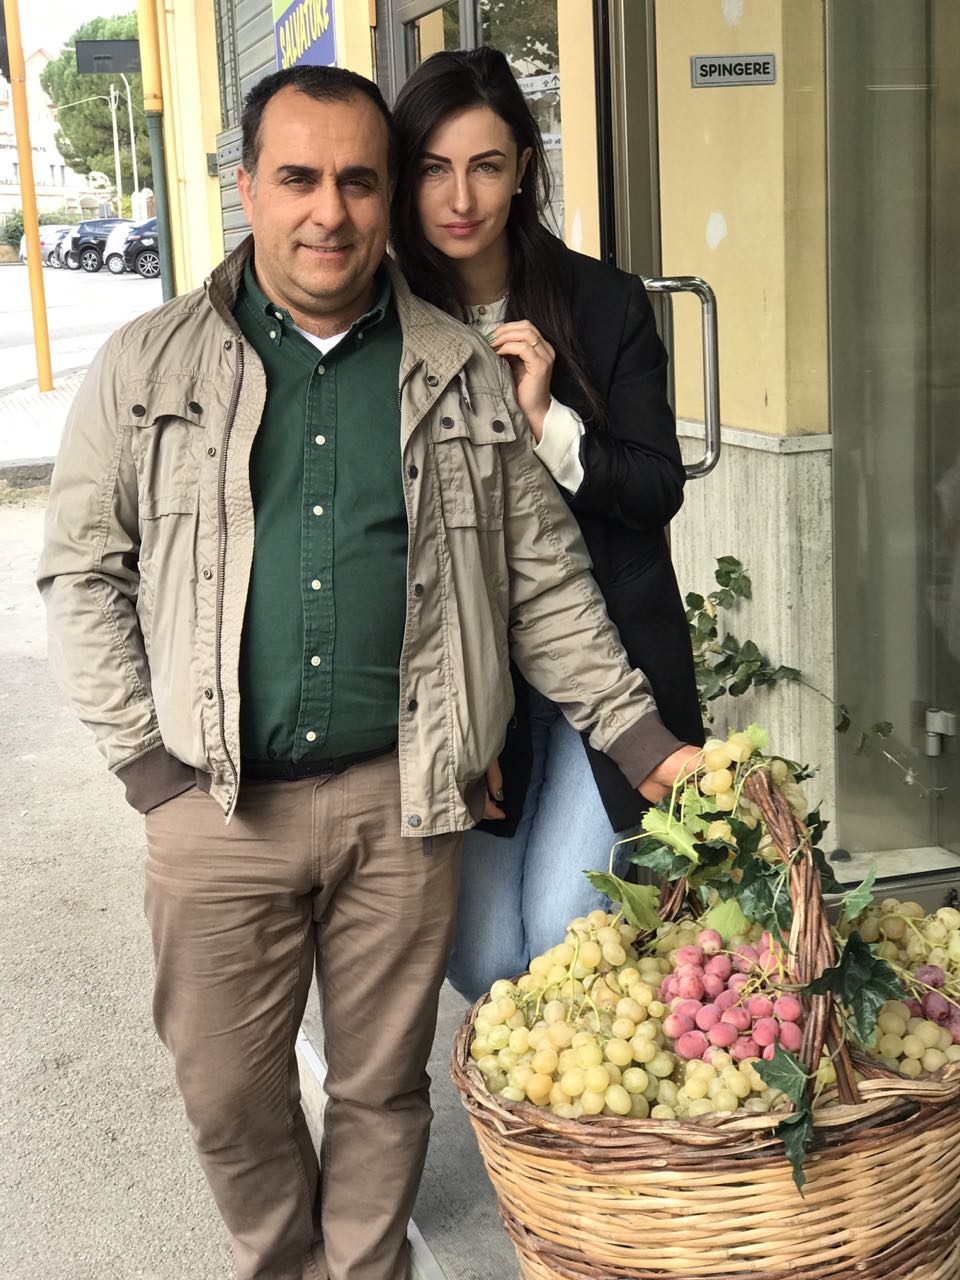 Молдаванка из Италии доставит вам самые экзотические фрукты!